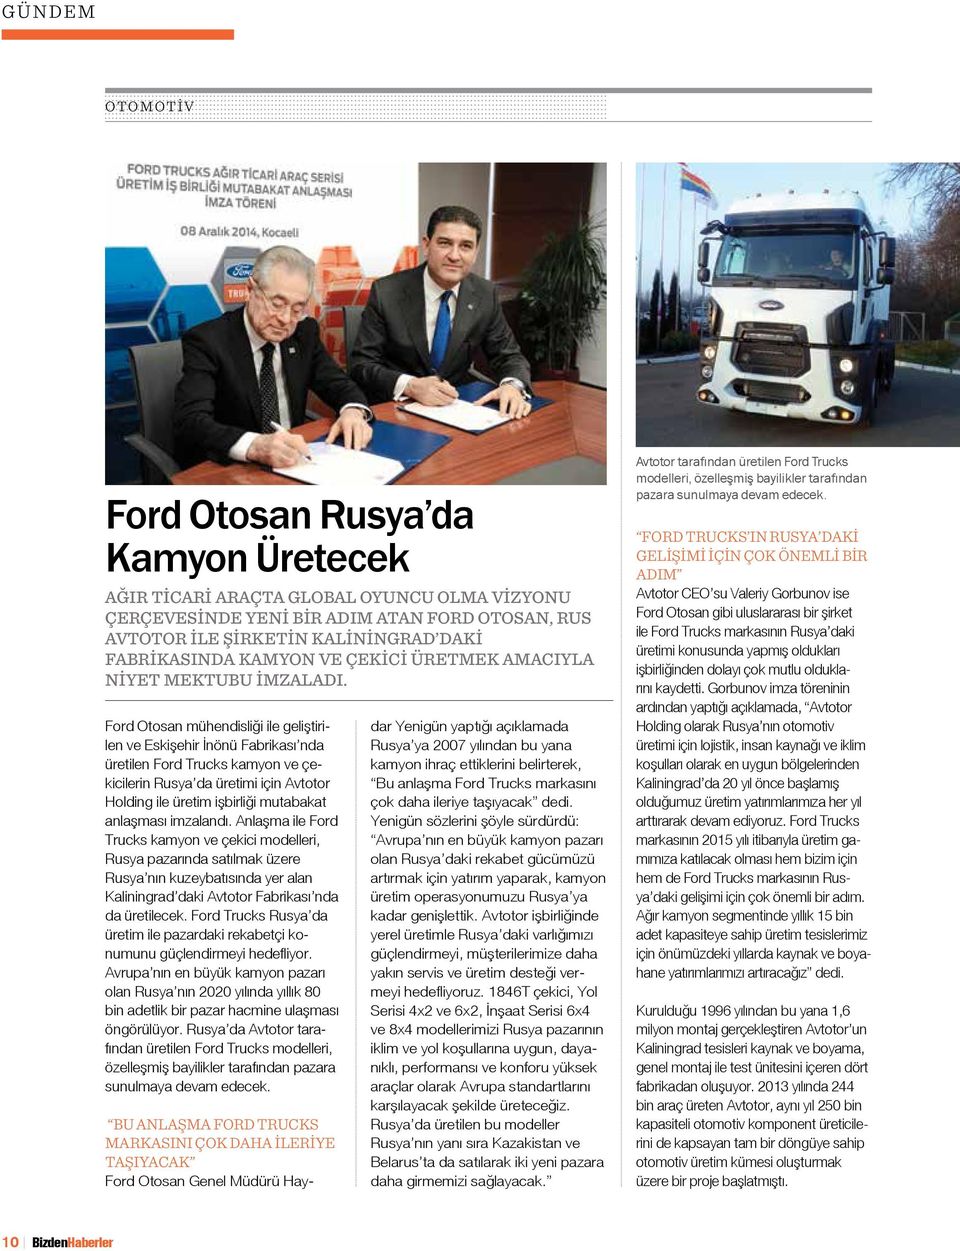 Ford Otosan mühendisliği ile geliştirilen ve Eskişehir İnönü Fabrikası nda üretilen Ford Trucks kamyon ve çekicilerin Rusya da üretimi için Avtotor Holding ile üretim işbirliği mutabakat anlaşması